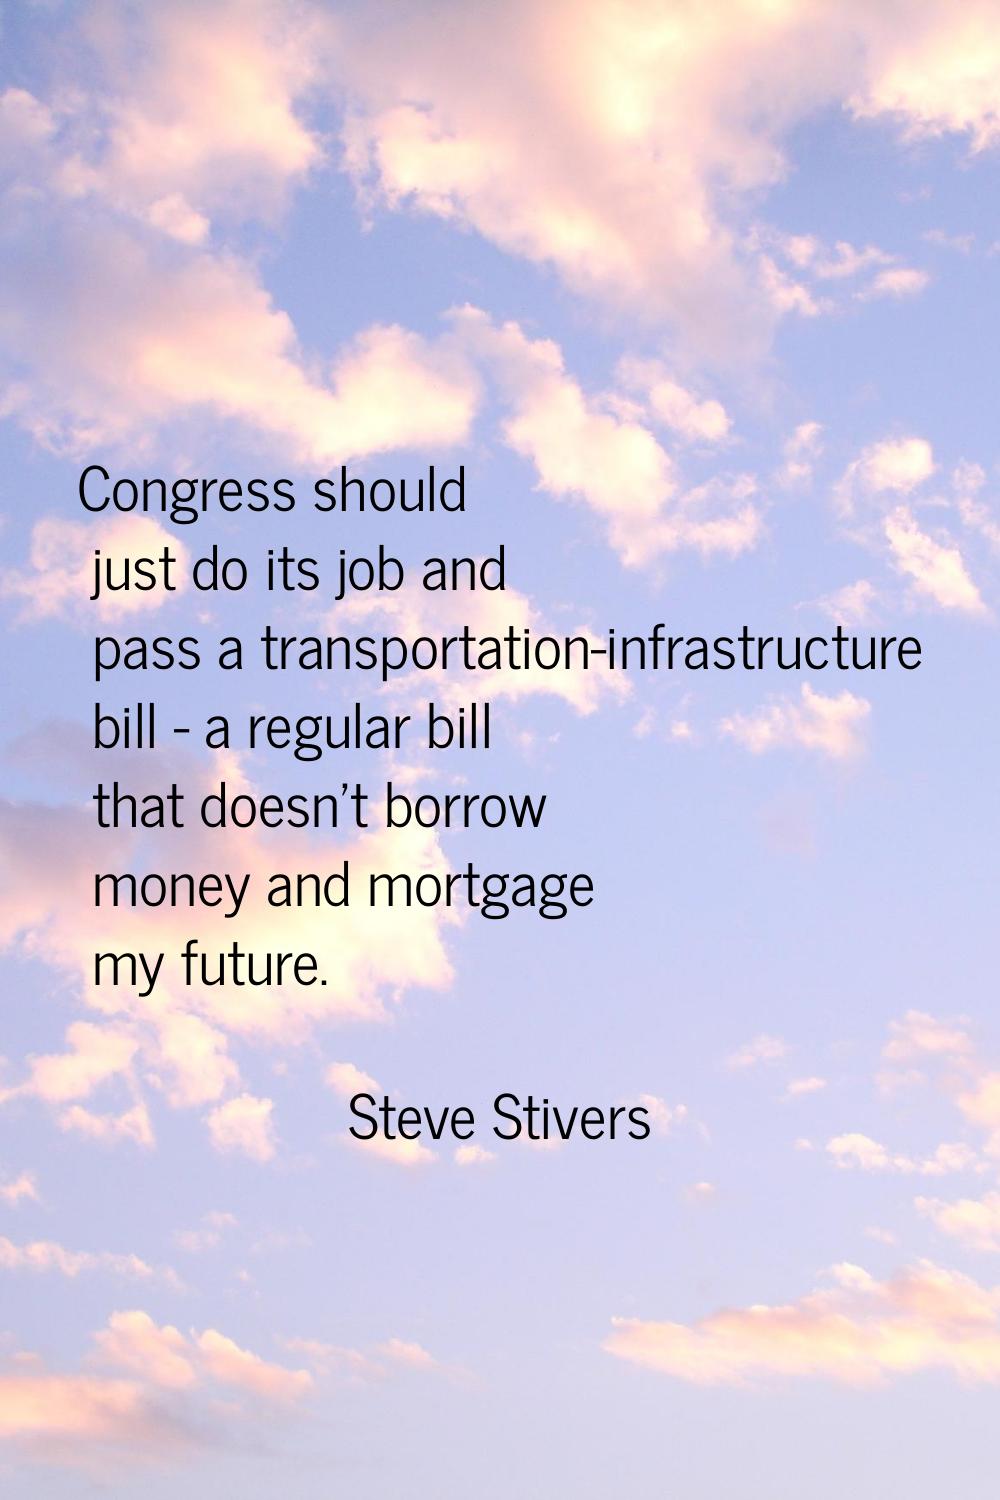 Congress should just do its job and pass a transportation-infrastructure bill - a regular bill that